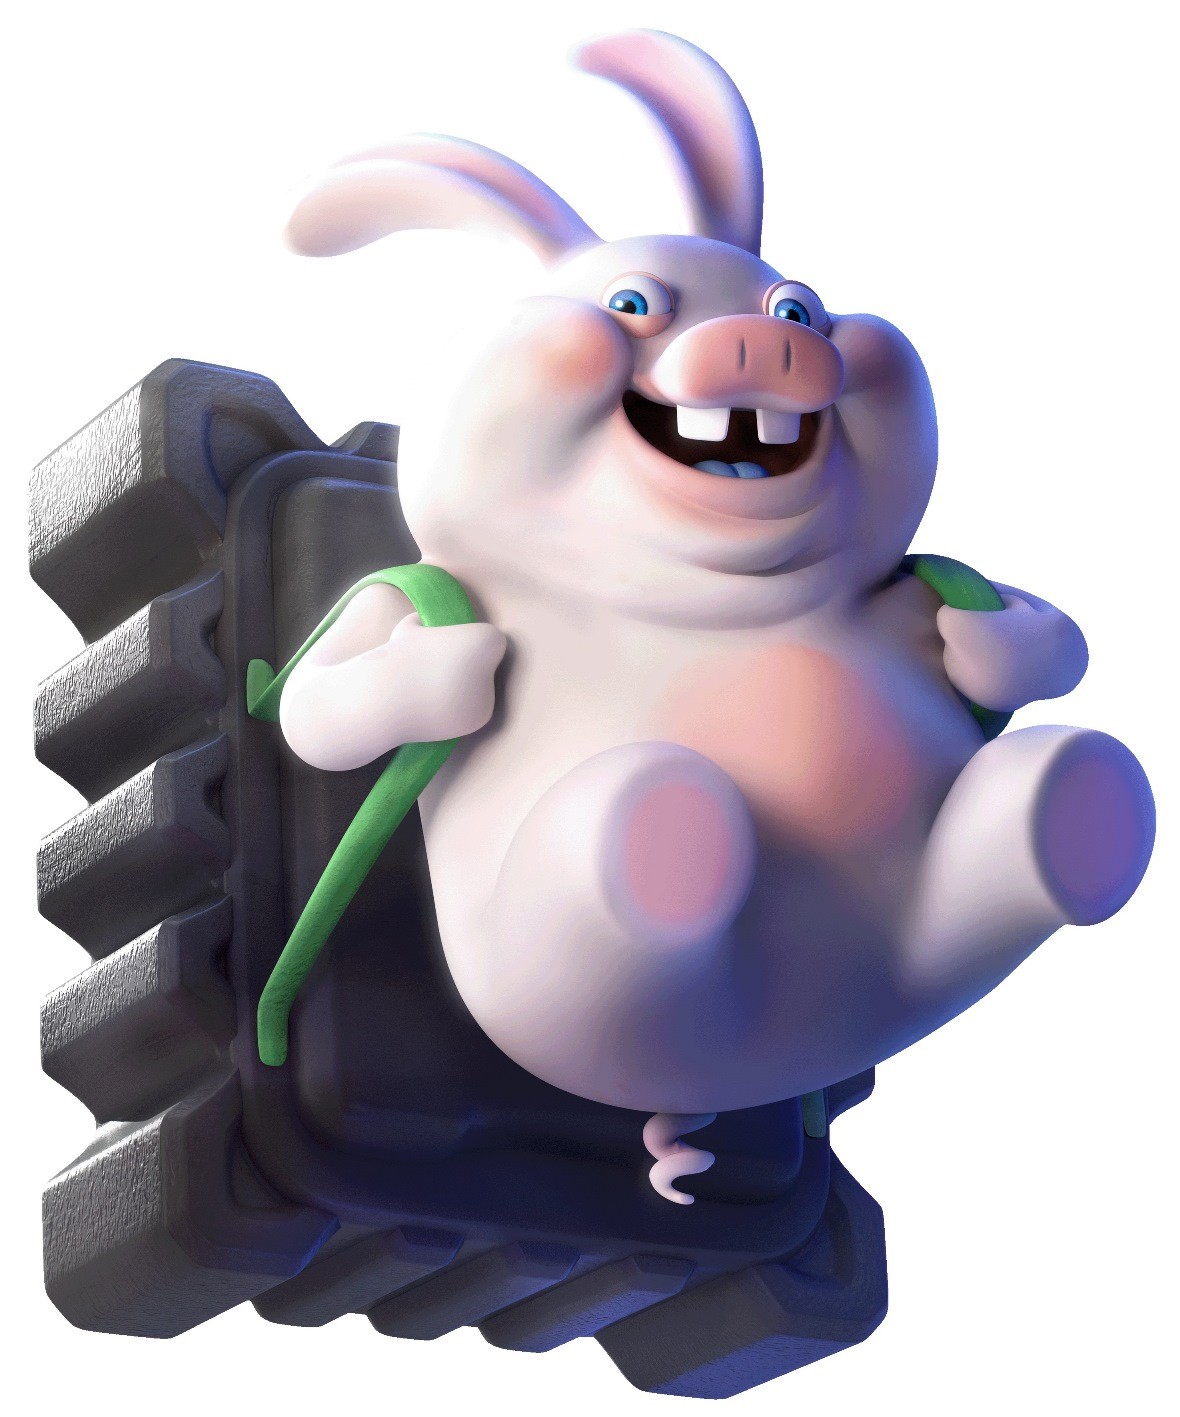 育碧发布《马力欧+疯狂兔子：星耀之愿》新艺术图 10月20日发售 4%title%